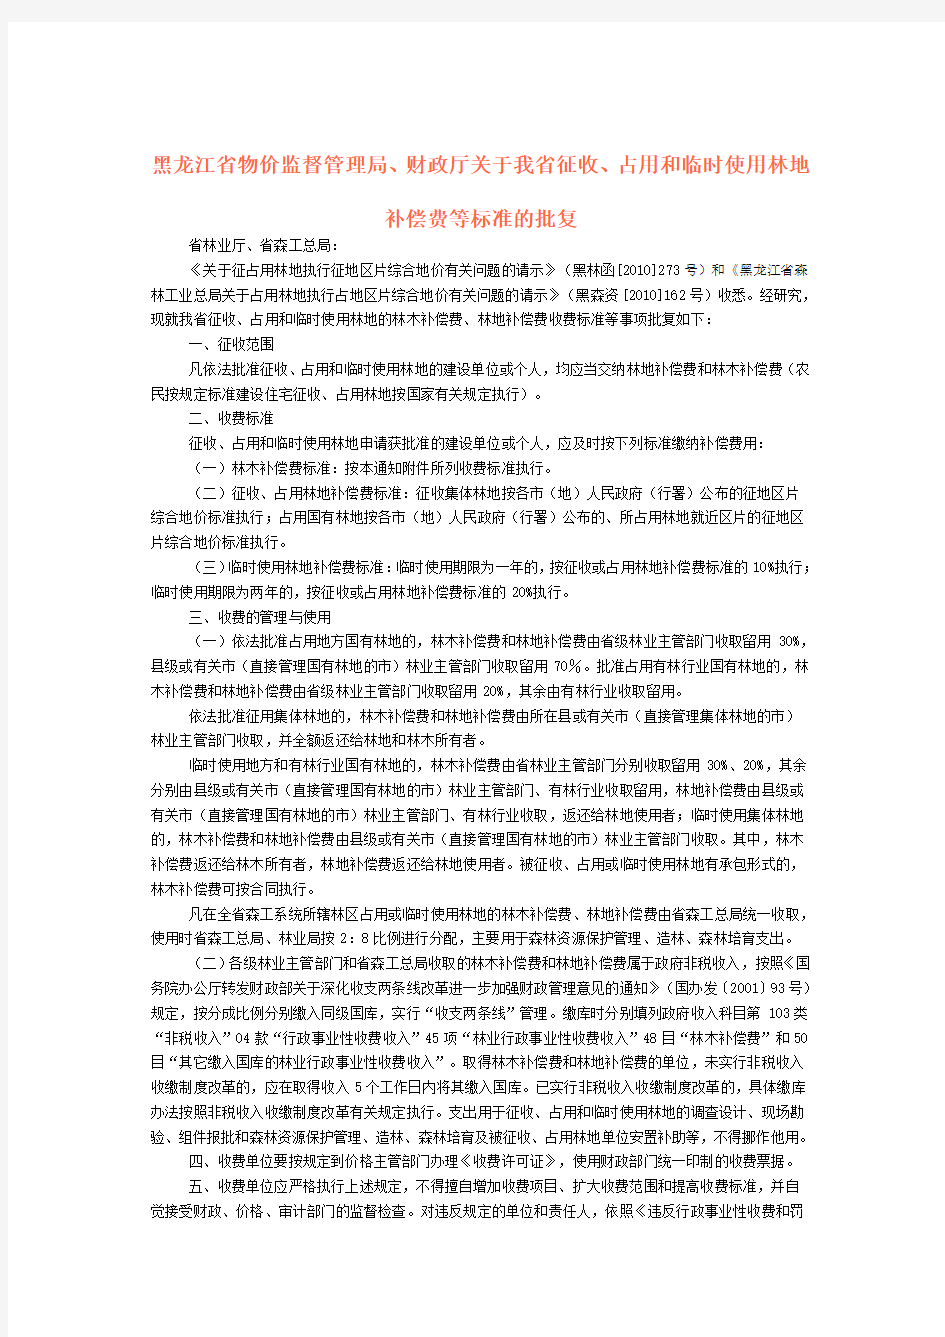 黑龙江省征收、占用和临时使用林地补偿费等标准的批复